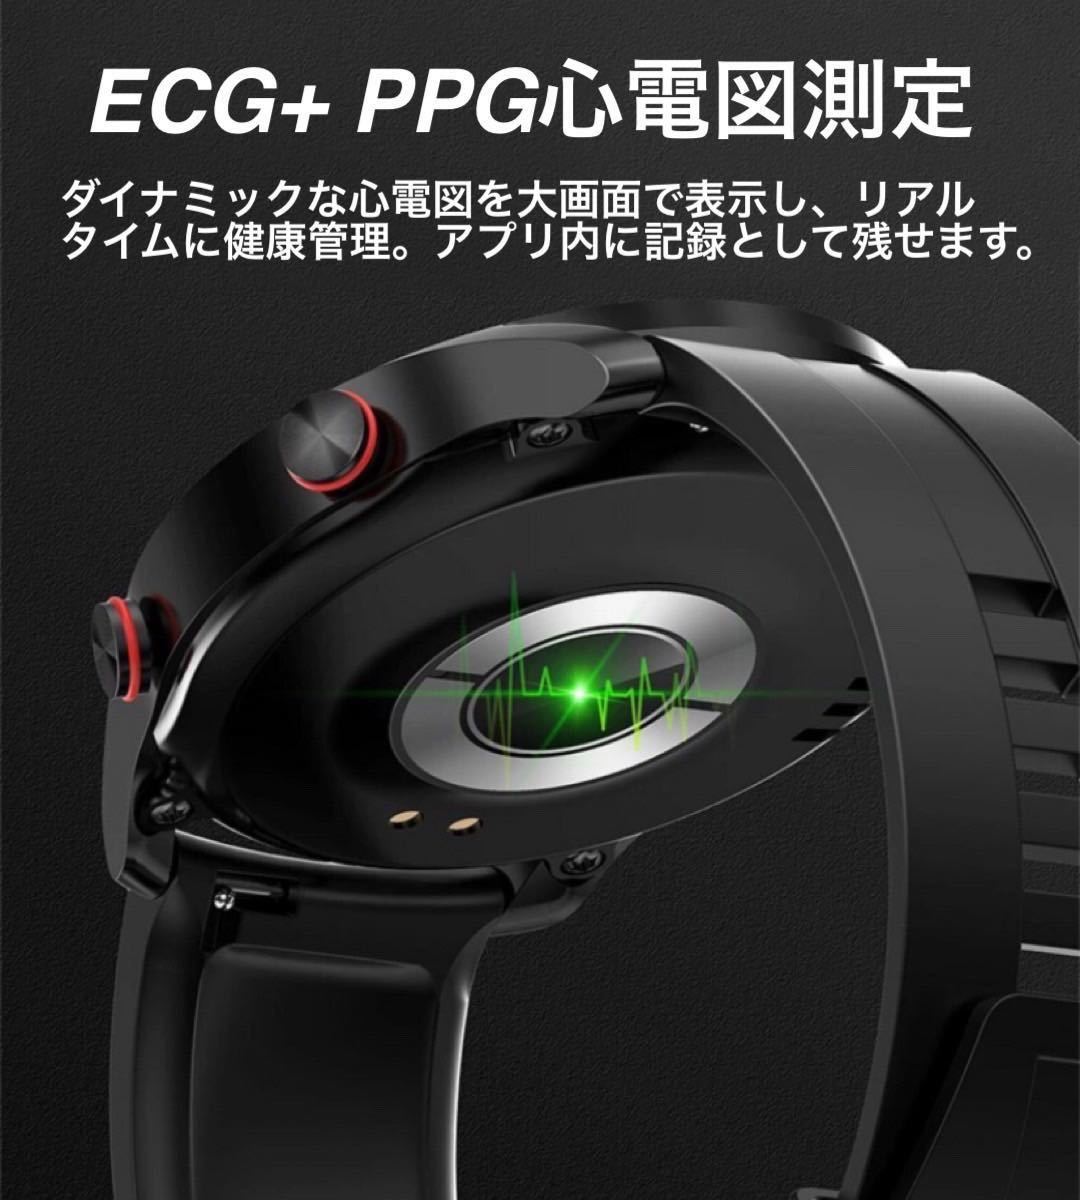 1 иен ~ бесплатная доставка 2024 год модели смарт-часы высокое разрешение ECG PPG сообщение спорт сердце . кровяное давление музыка сон чёрная кожа Android iPhone черный 